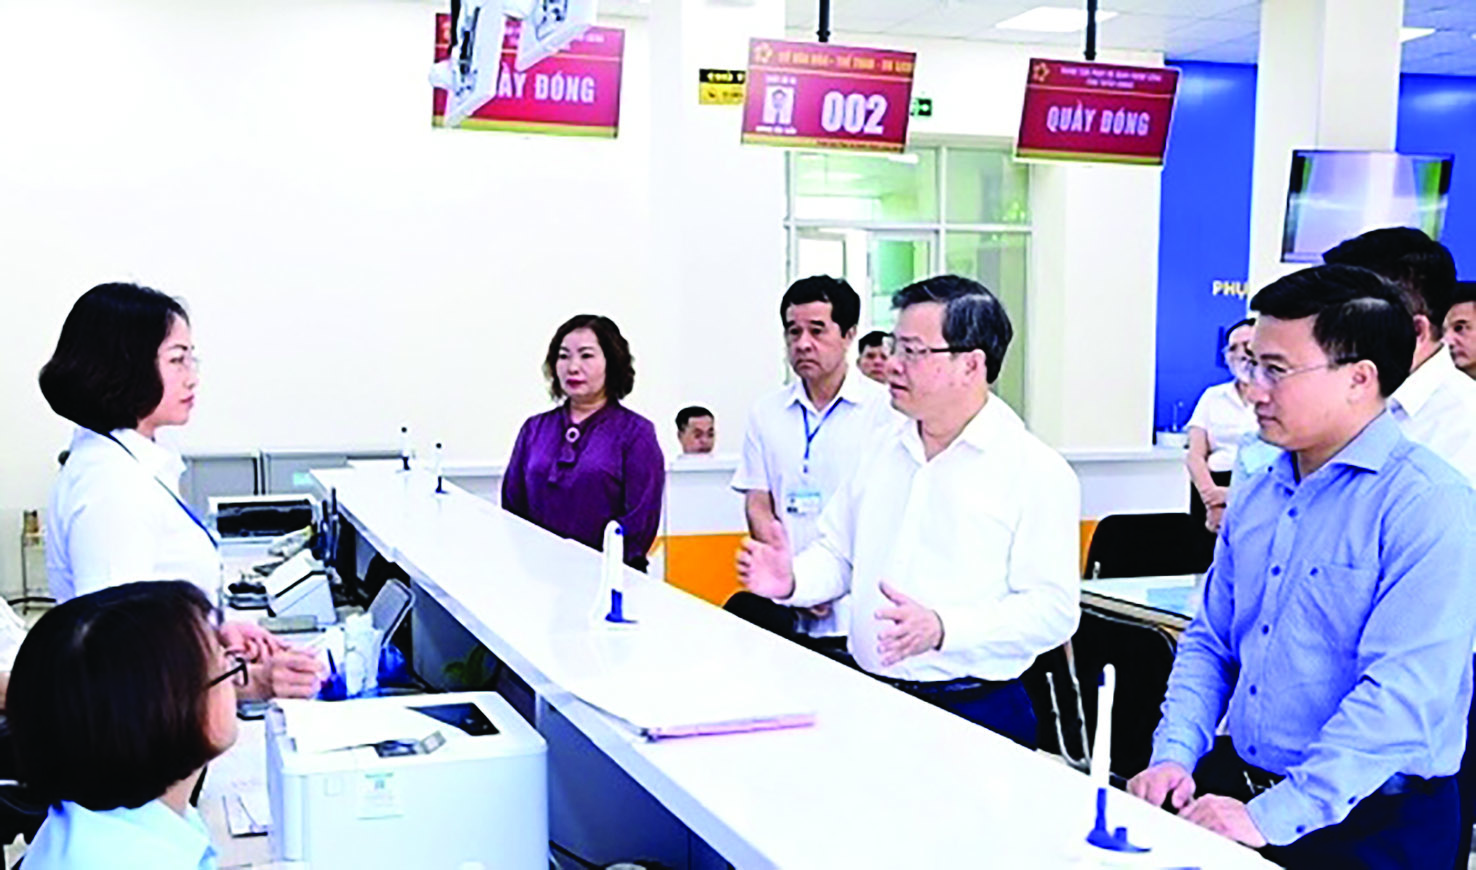  Chủ tịch UBND tỉnhTuyên Quang Nguyễn Văn Sơn kiểm tra việc giải quyết thủ tục hành chính tại Trung tâm Phục vụ hành chính công tỉnh.